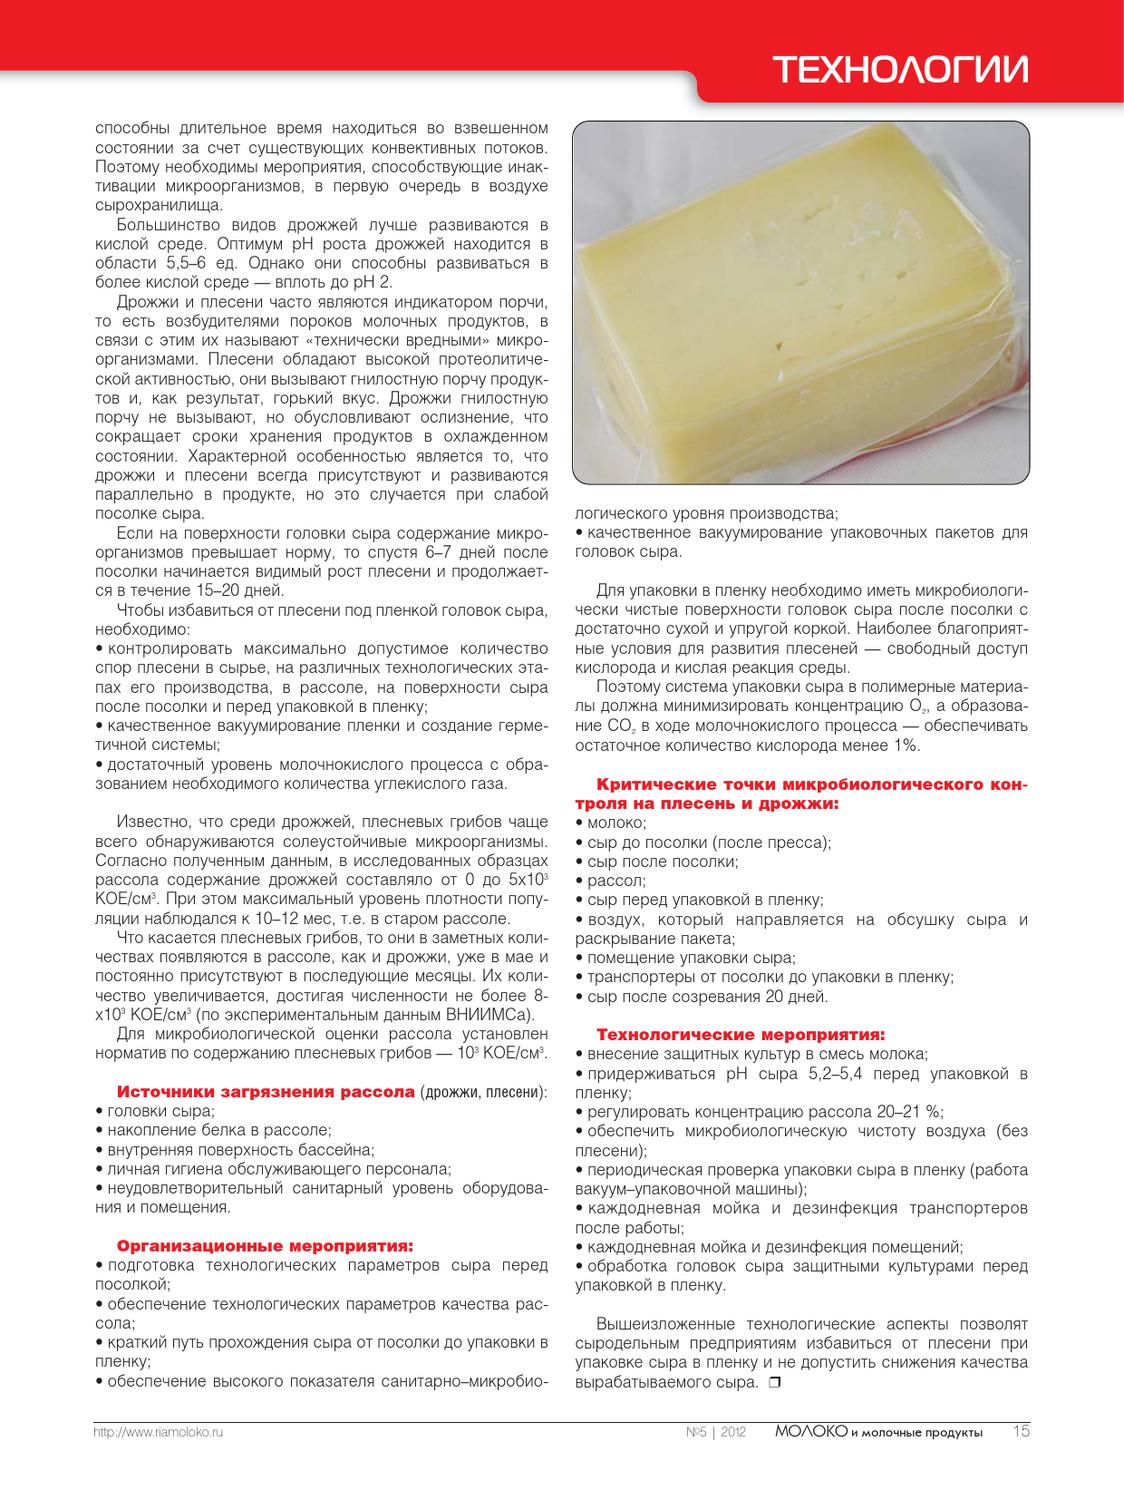 Вся польза в брынзе: чем полюбился румынский сыр всему миру?